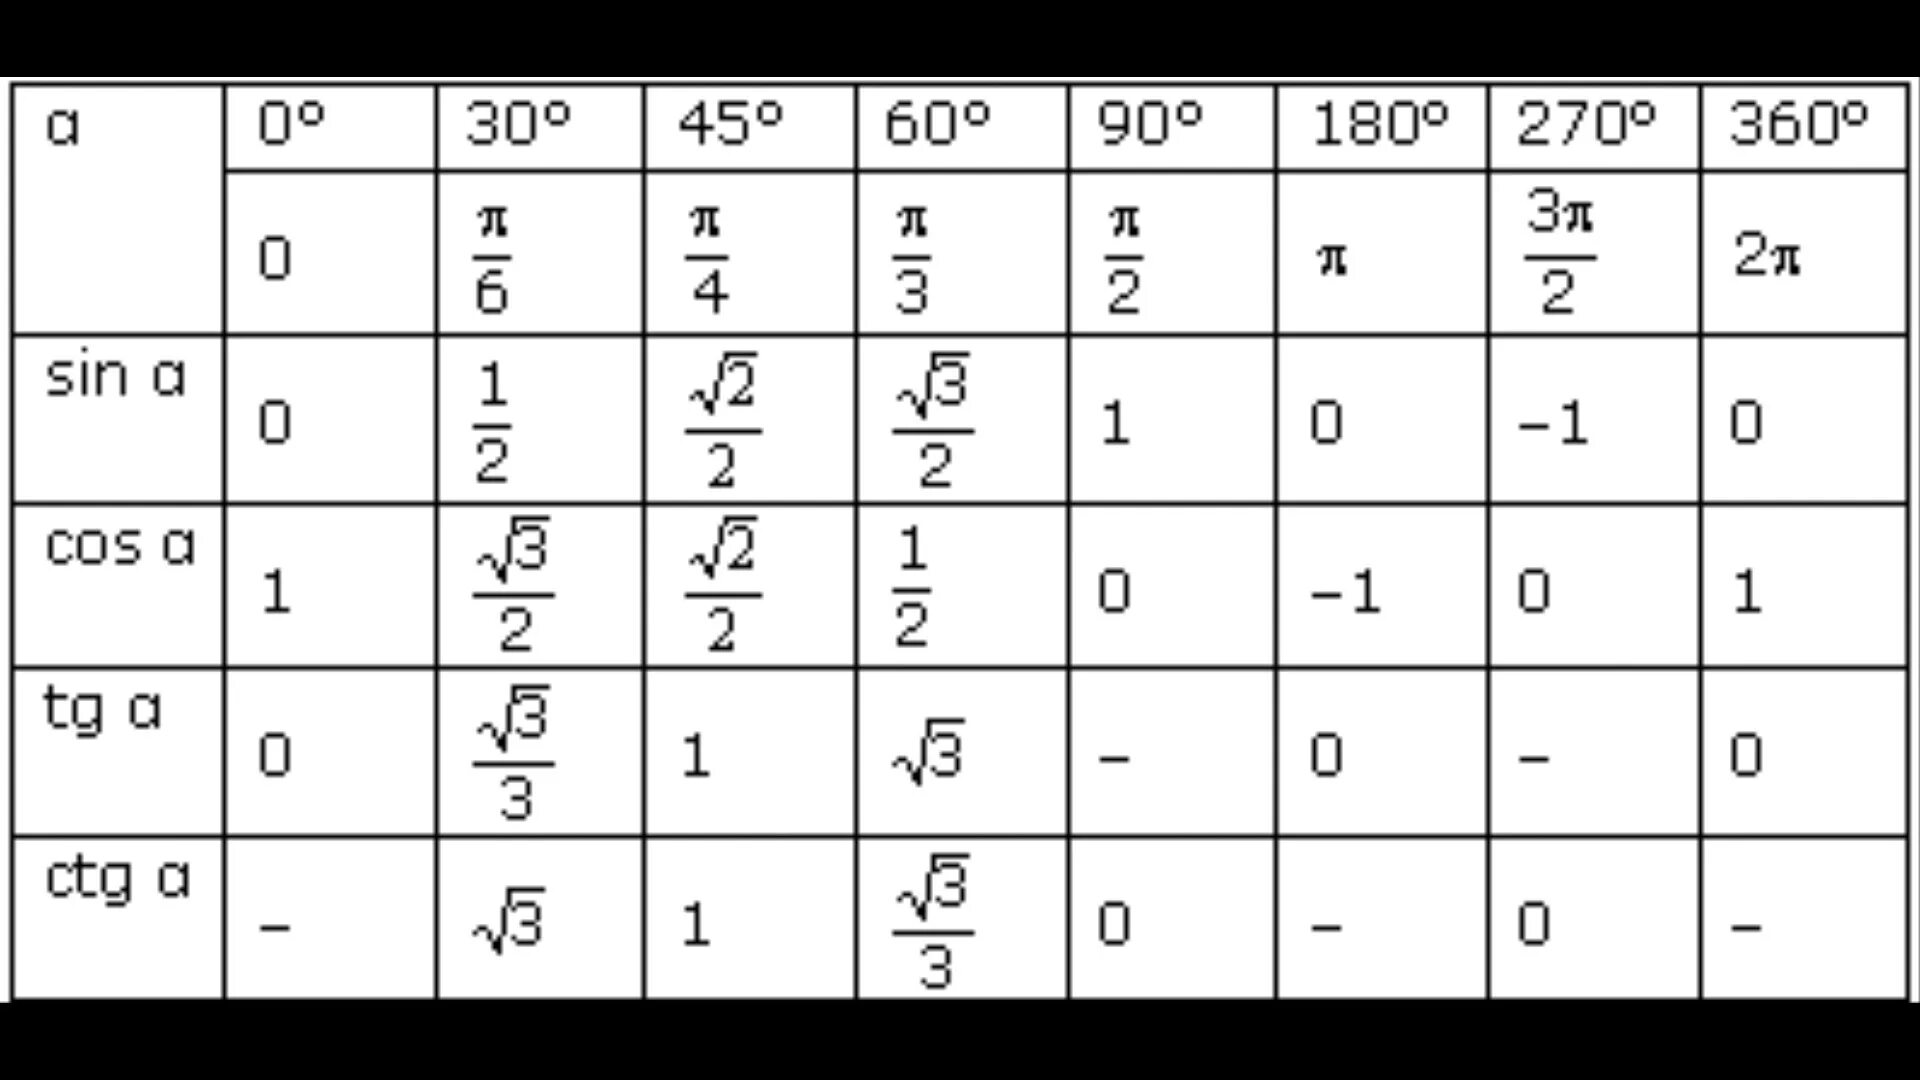 P 0 42. Таблица синус косинус тангенс 30 45 60. Таблица 30 45 60 градусов синус косинус тангенс. Чему равен синус угла 45 градусов таблица. Чему равен синус 90 градусов таблица.